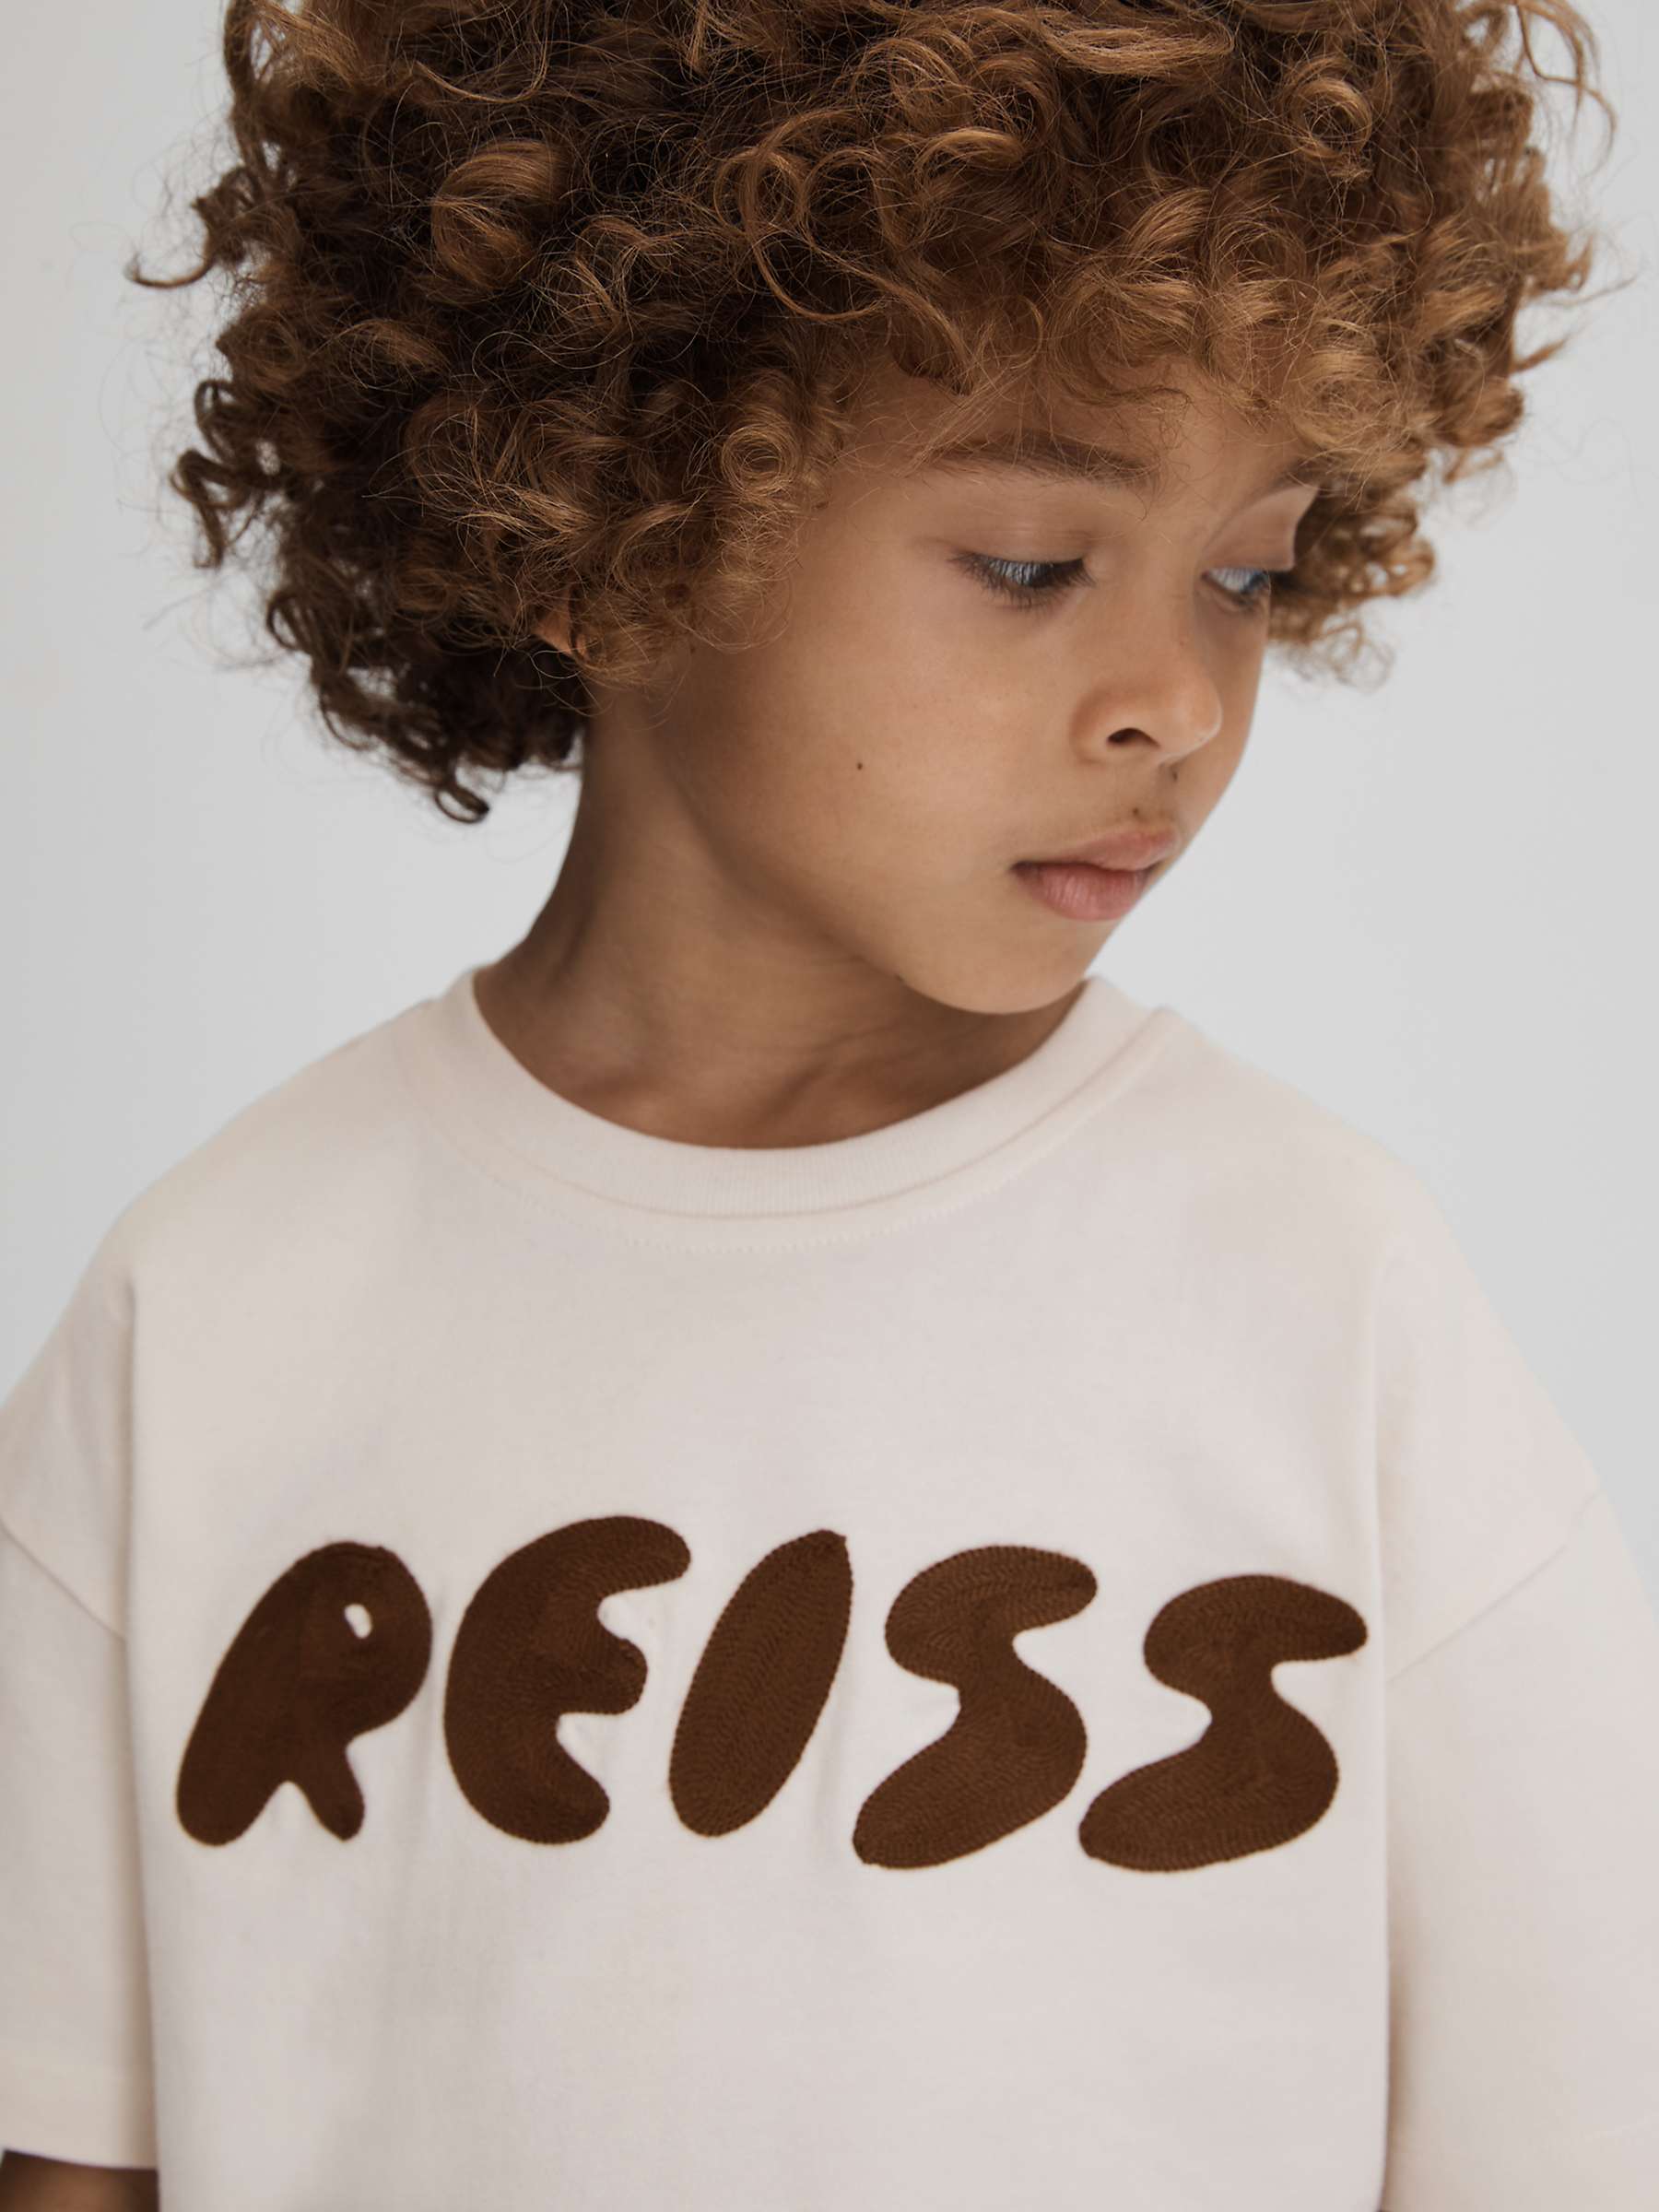 Buy Reiss Kids' Sands Logo Motif Crew Neck T-Shirt, Ecru Online at johnlewis.com